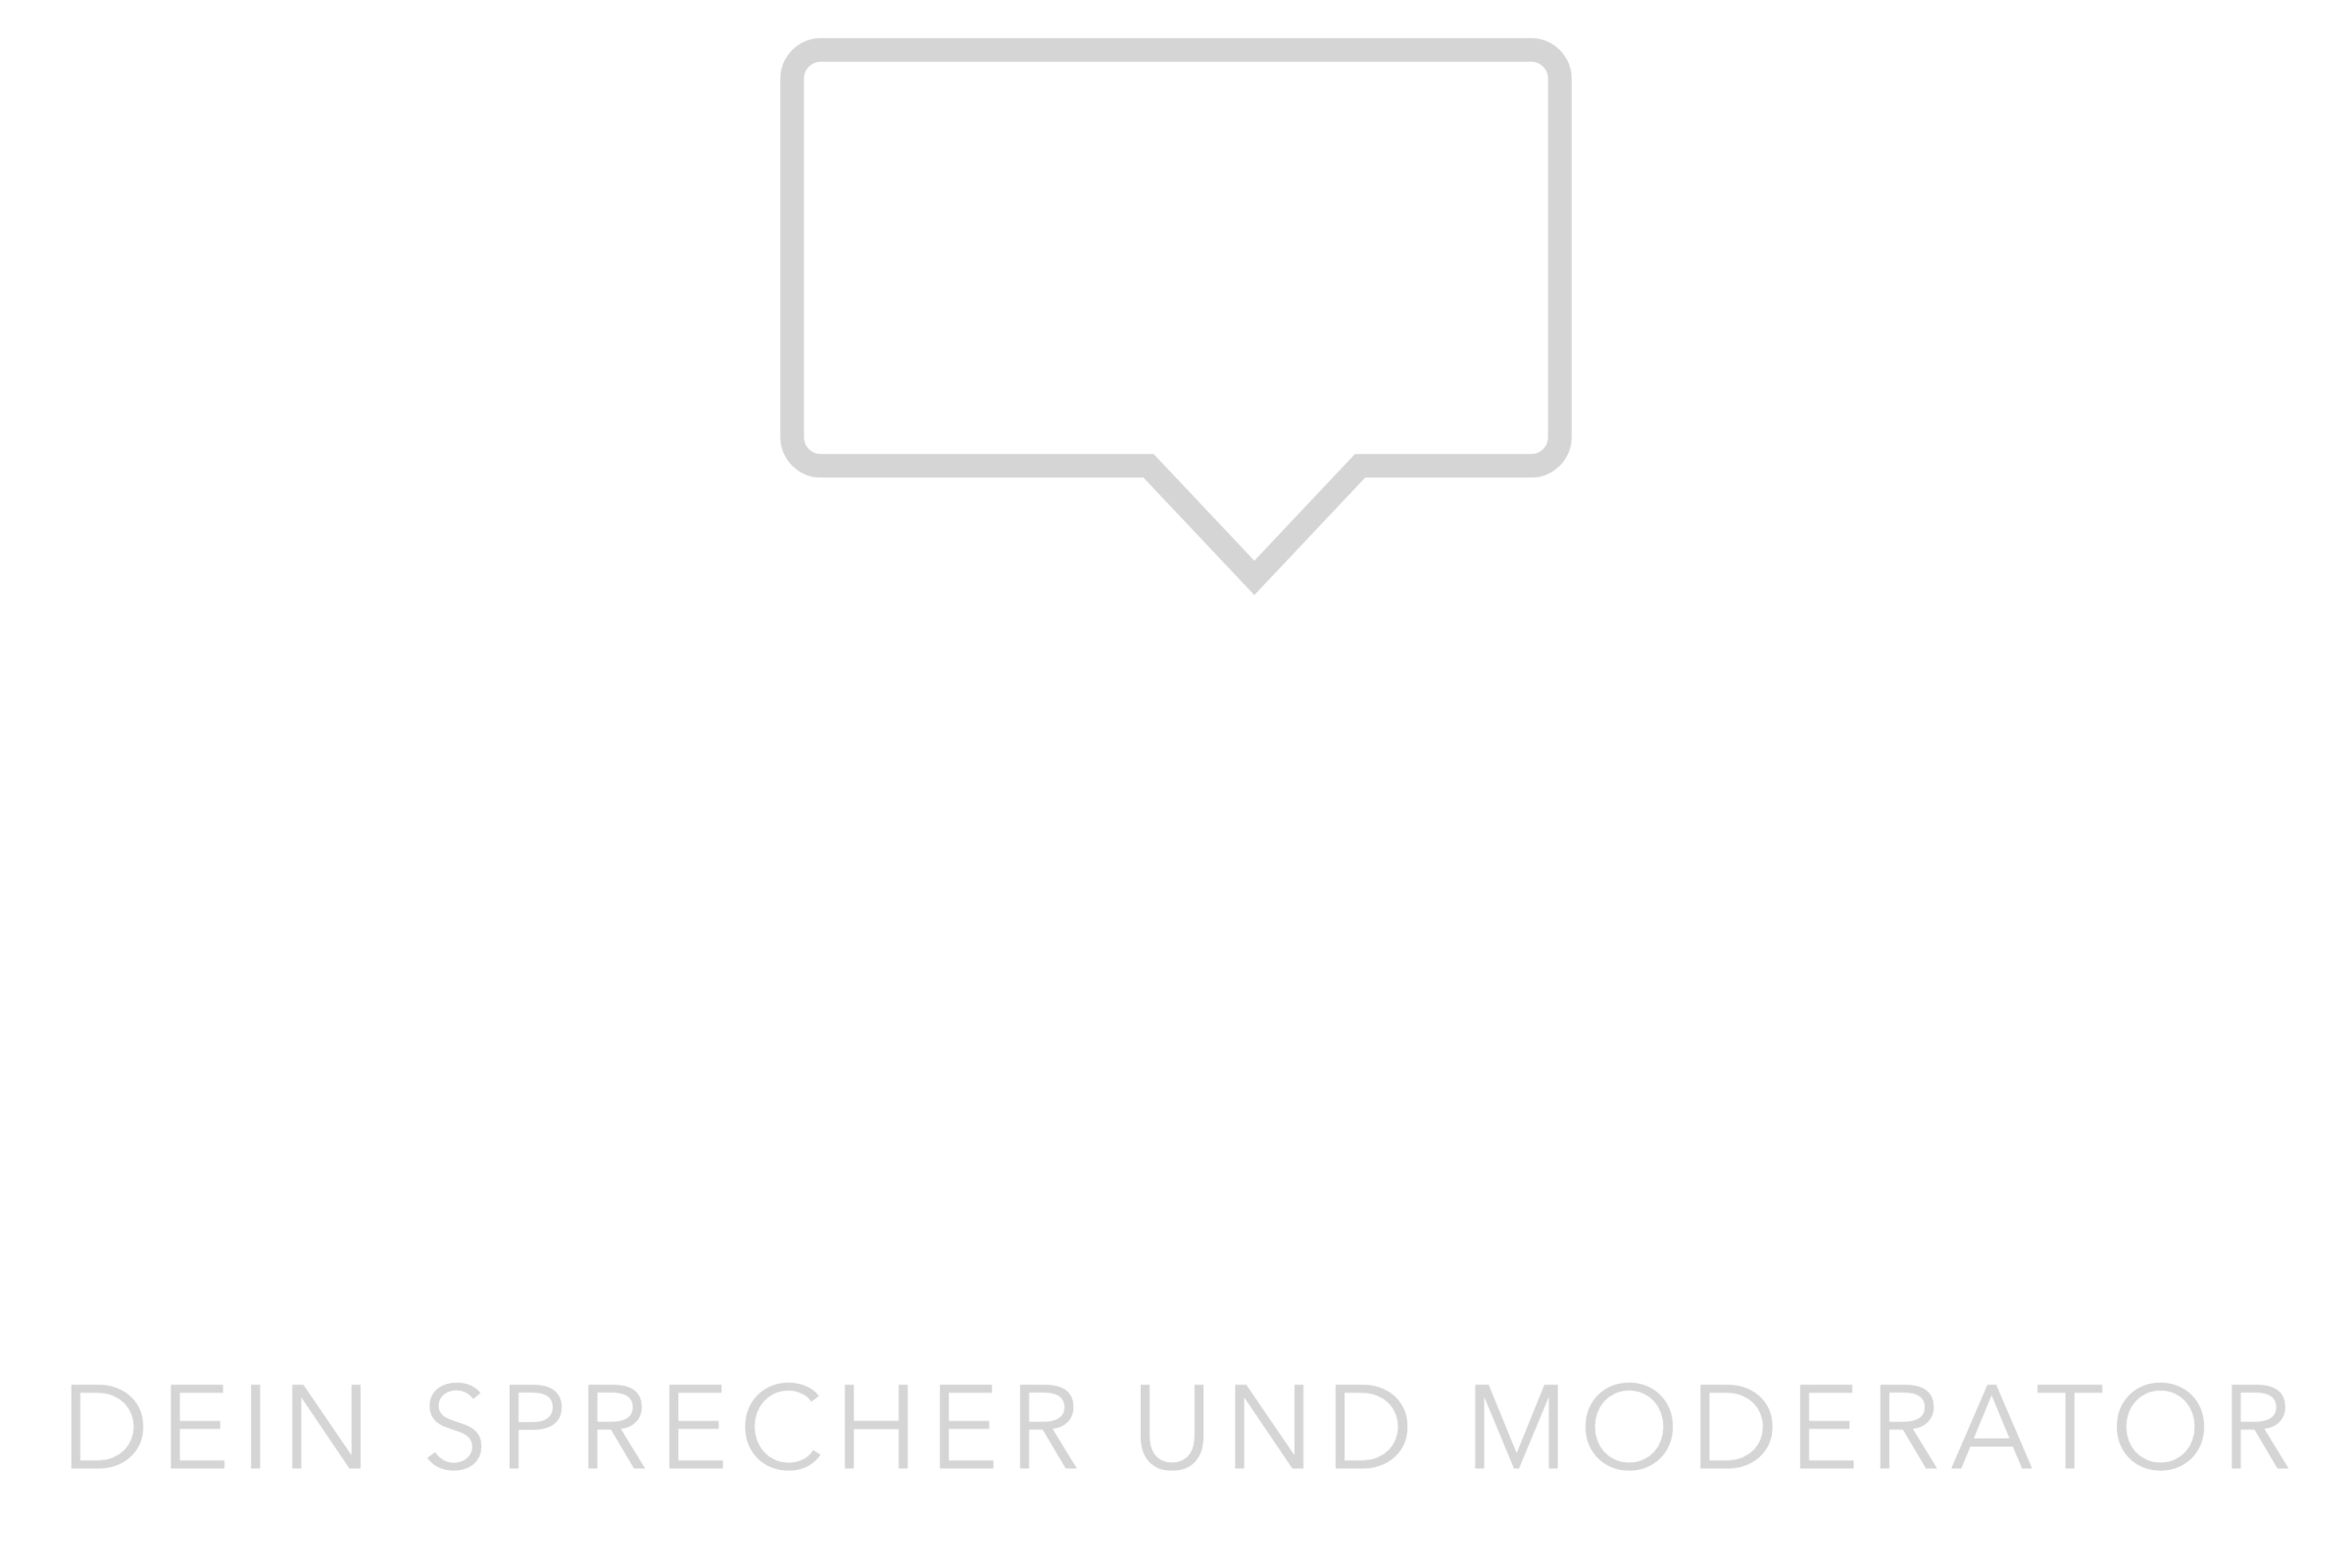 Amadeus Banerjee - Dein Sprecher und Moderator